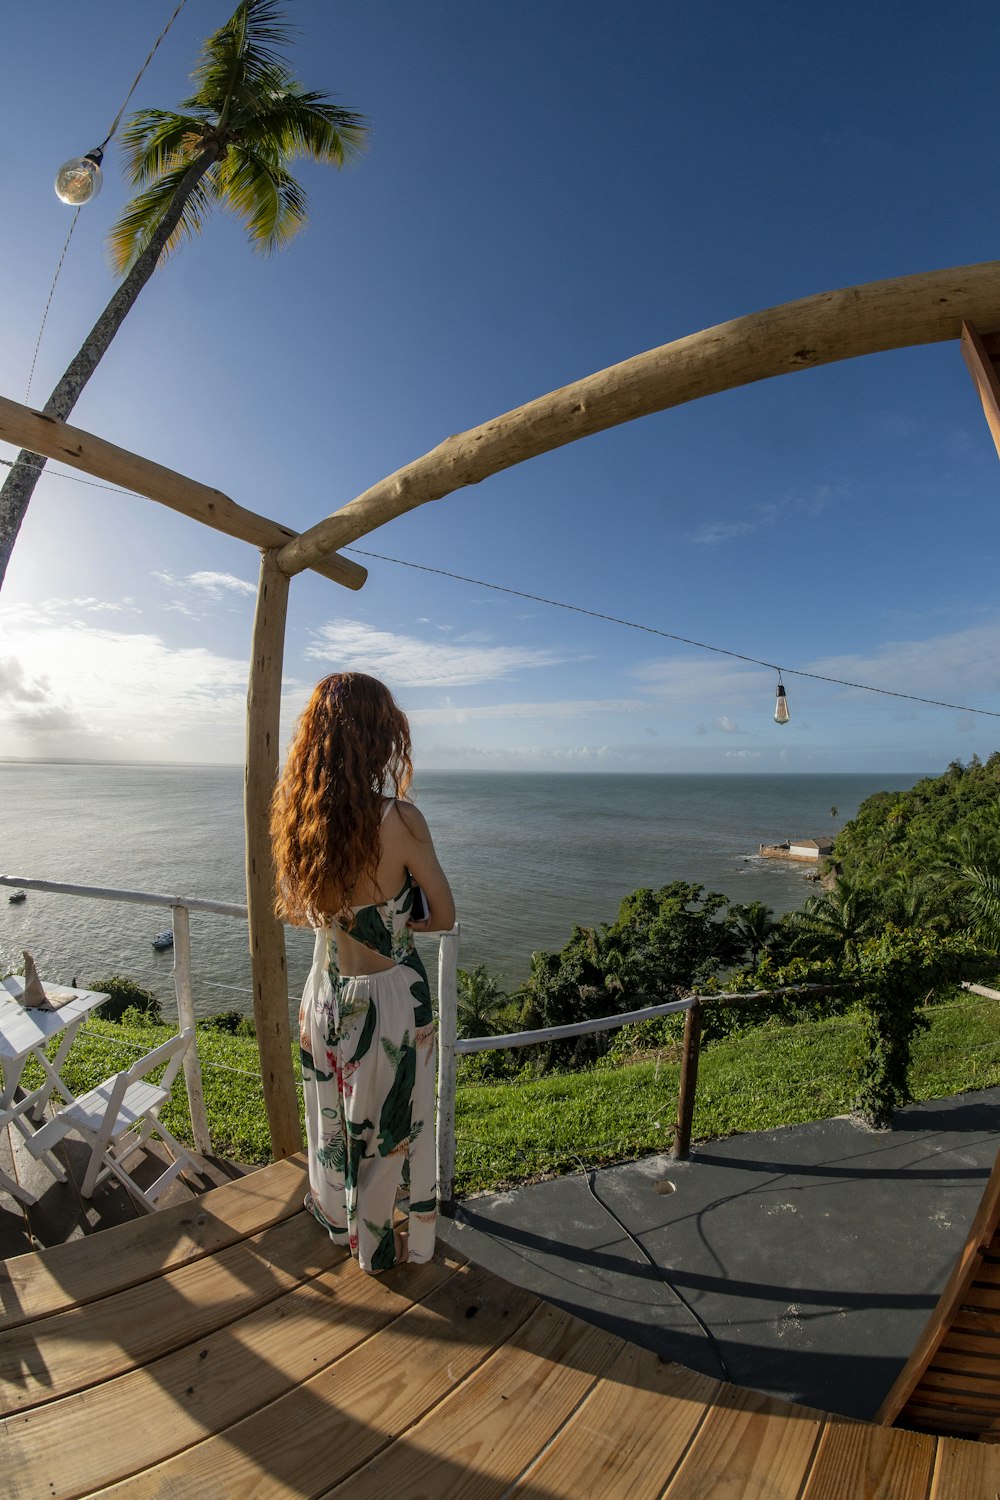 Una mujer parada en una terraza mirando hacia el océano